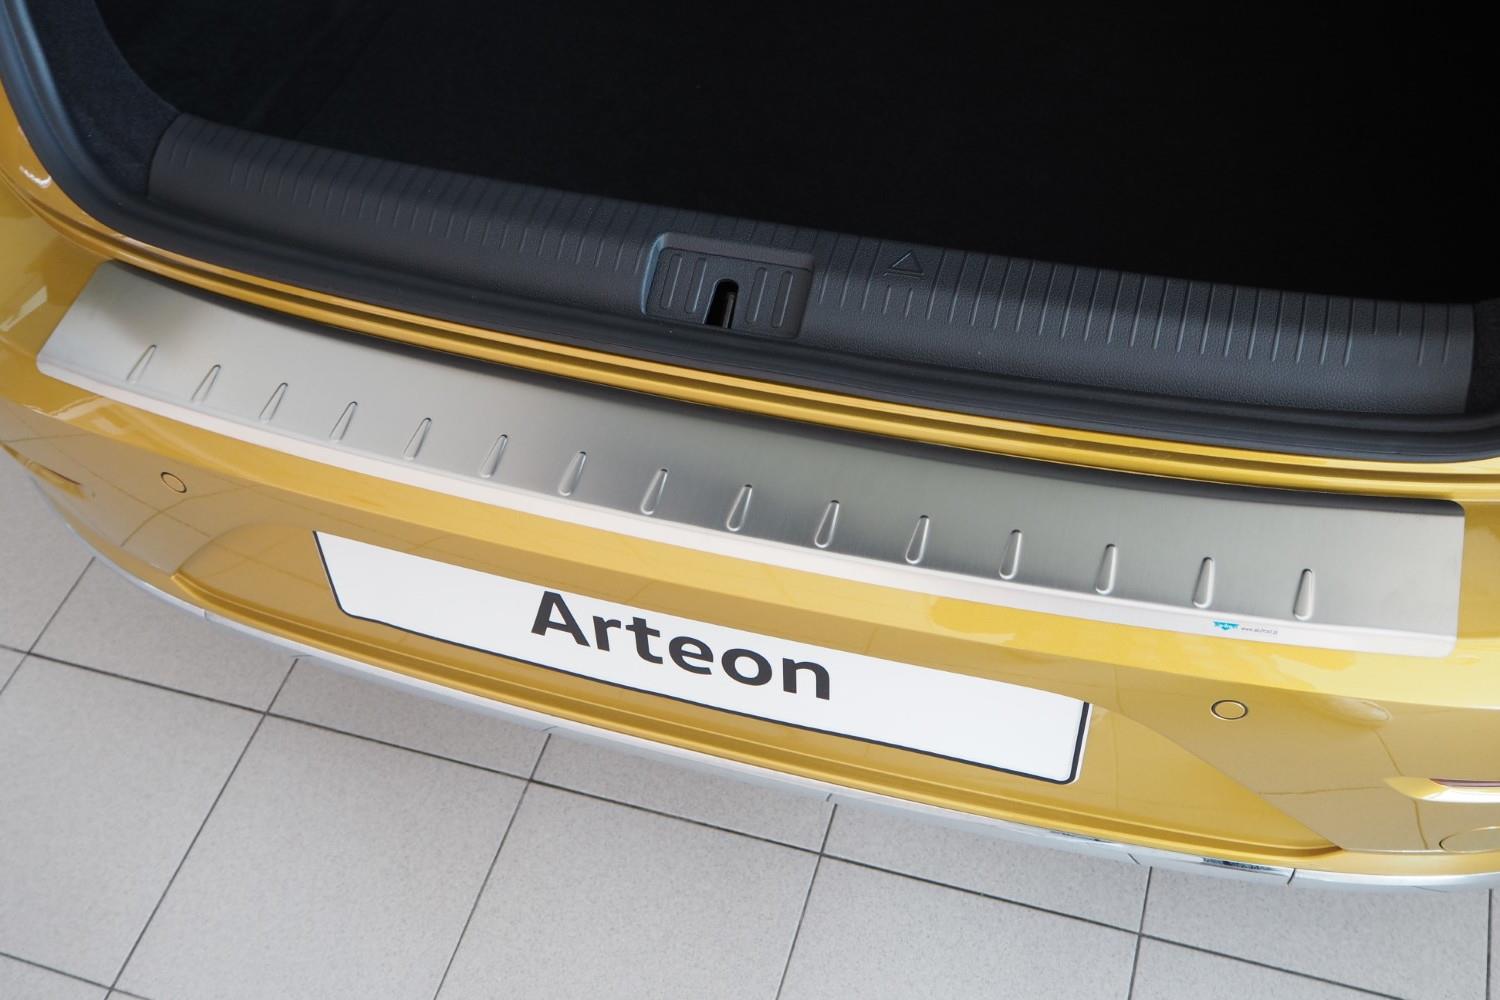 Protection de seuil de coffre convient à Volkswagen Arteon 2017-présent 5 portes bicorps acier inox brossé